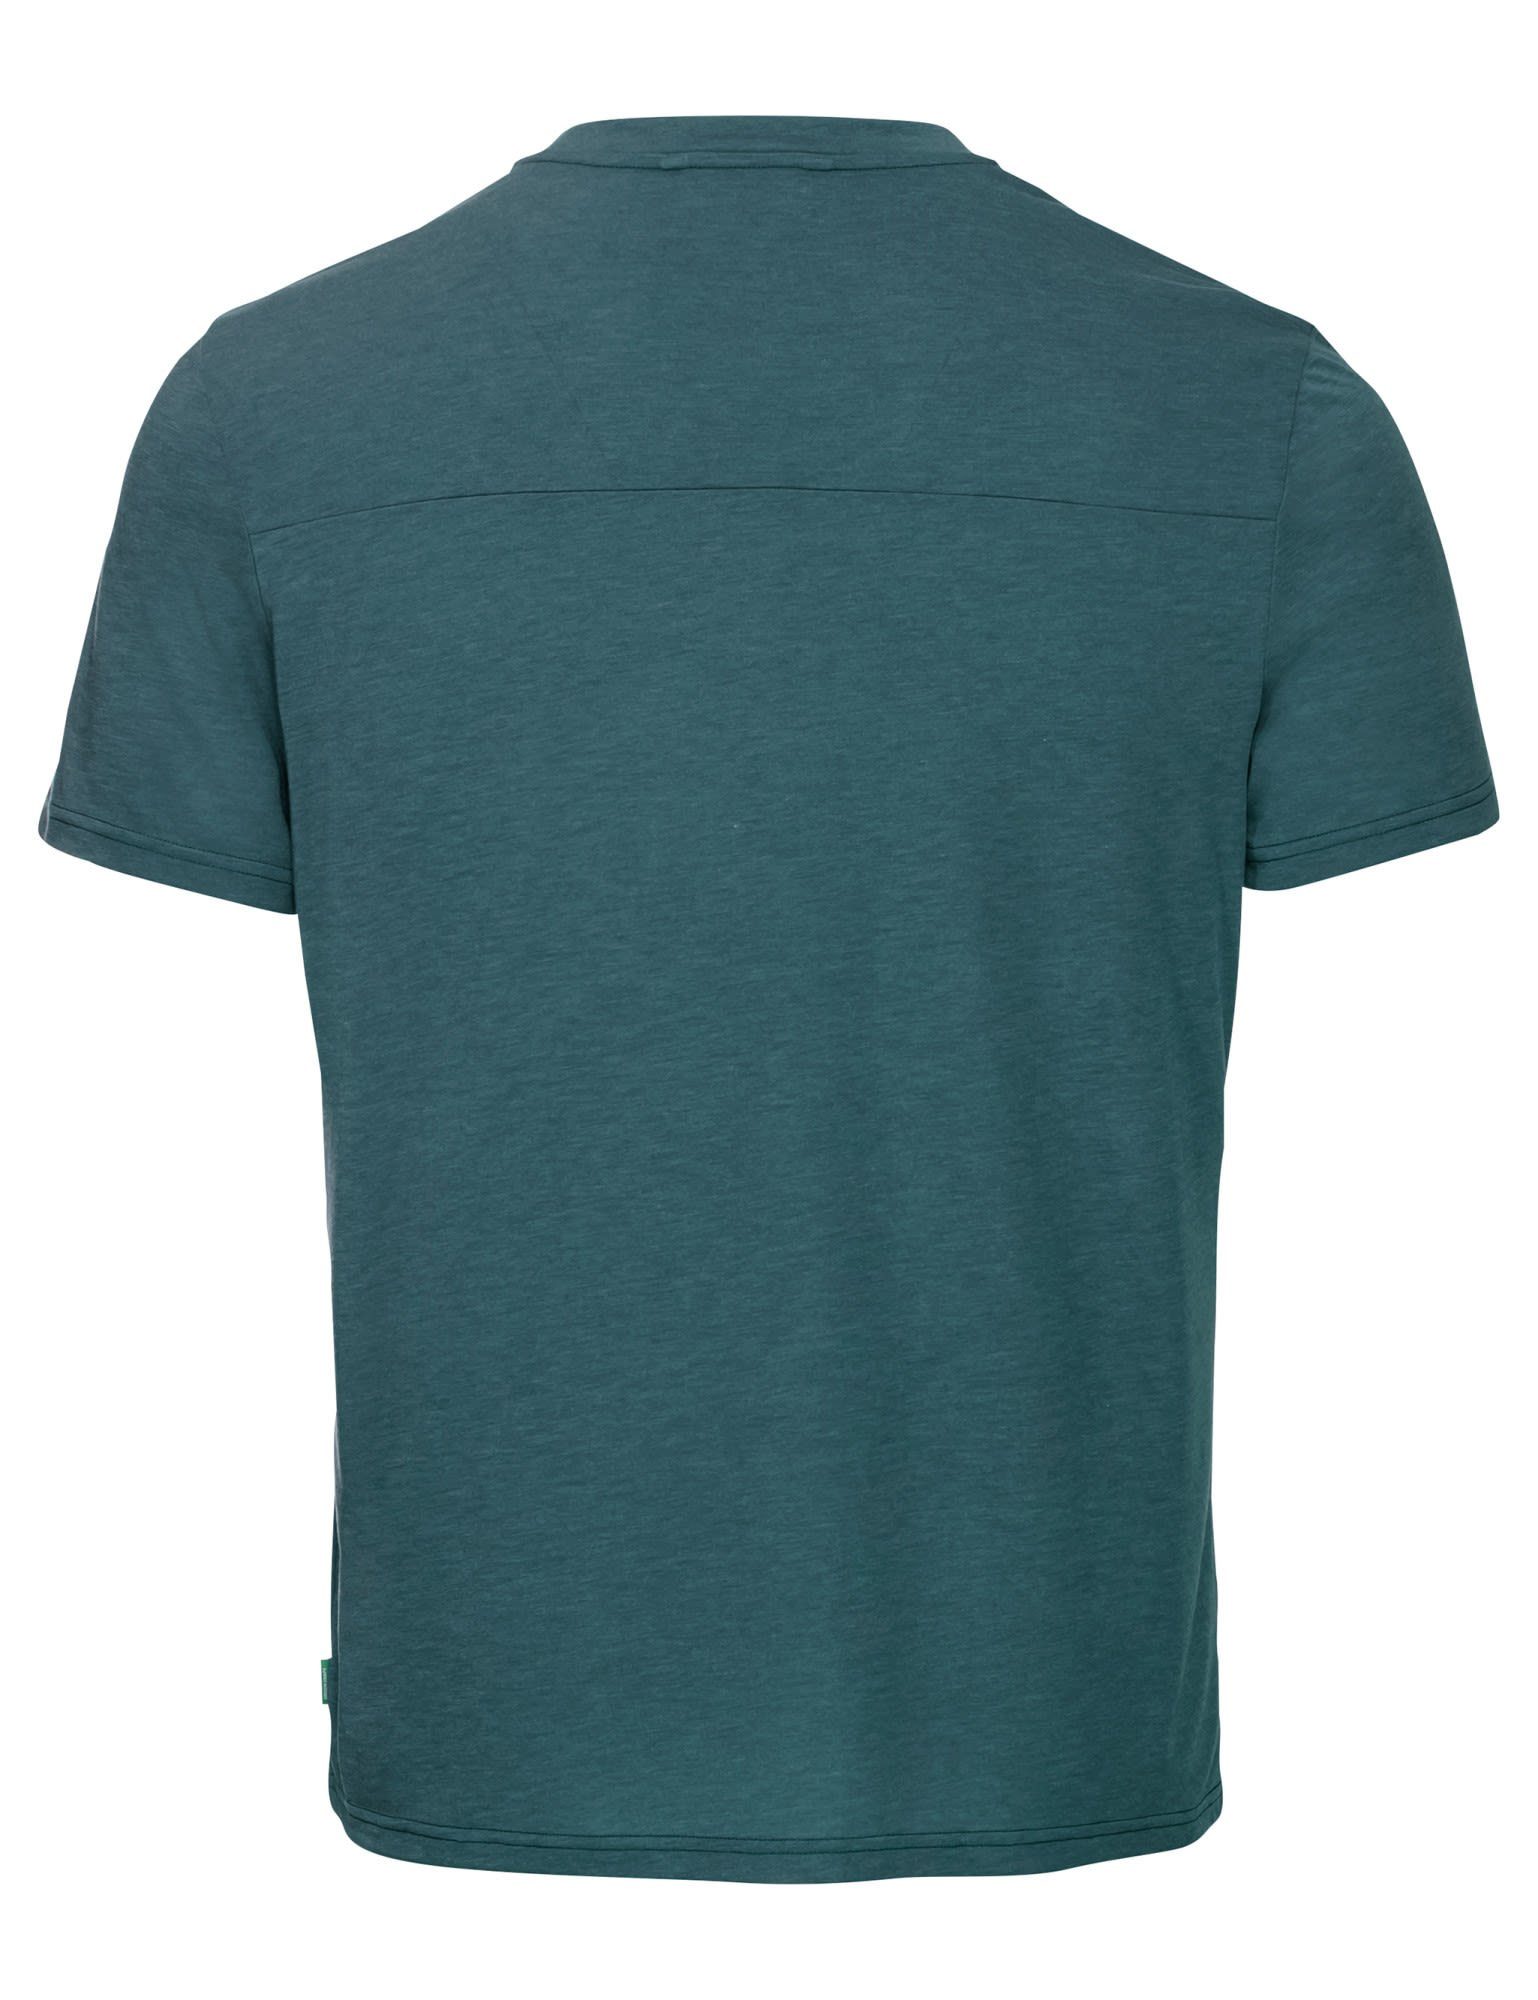 Mallard VAUDE T-shirt Green Mens Kurzarm-Shirt Vaude T-Shirt Herren Iii Tekoa